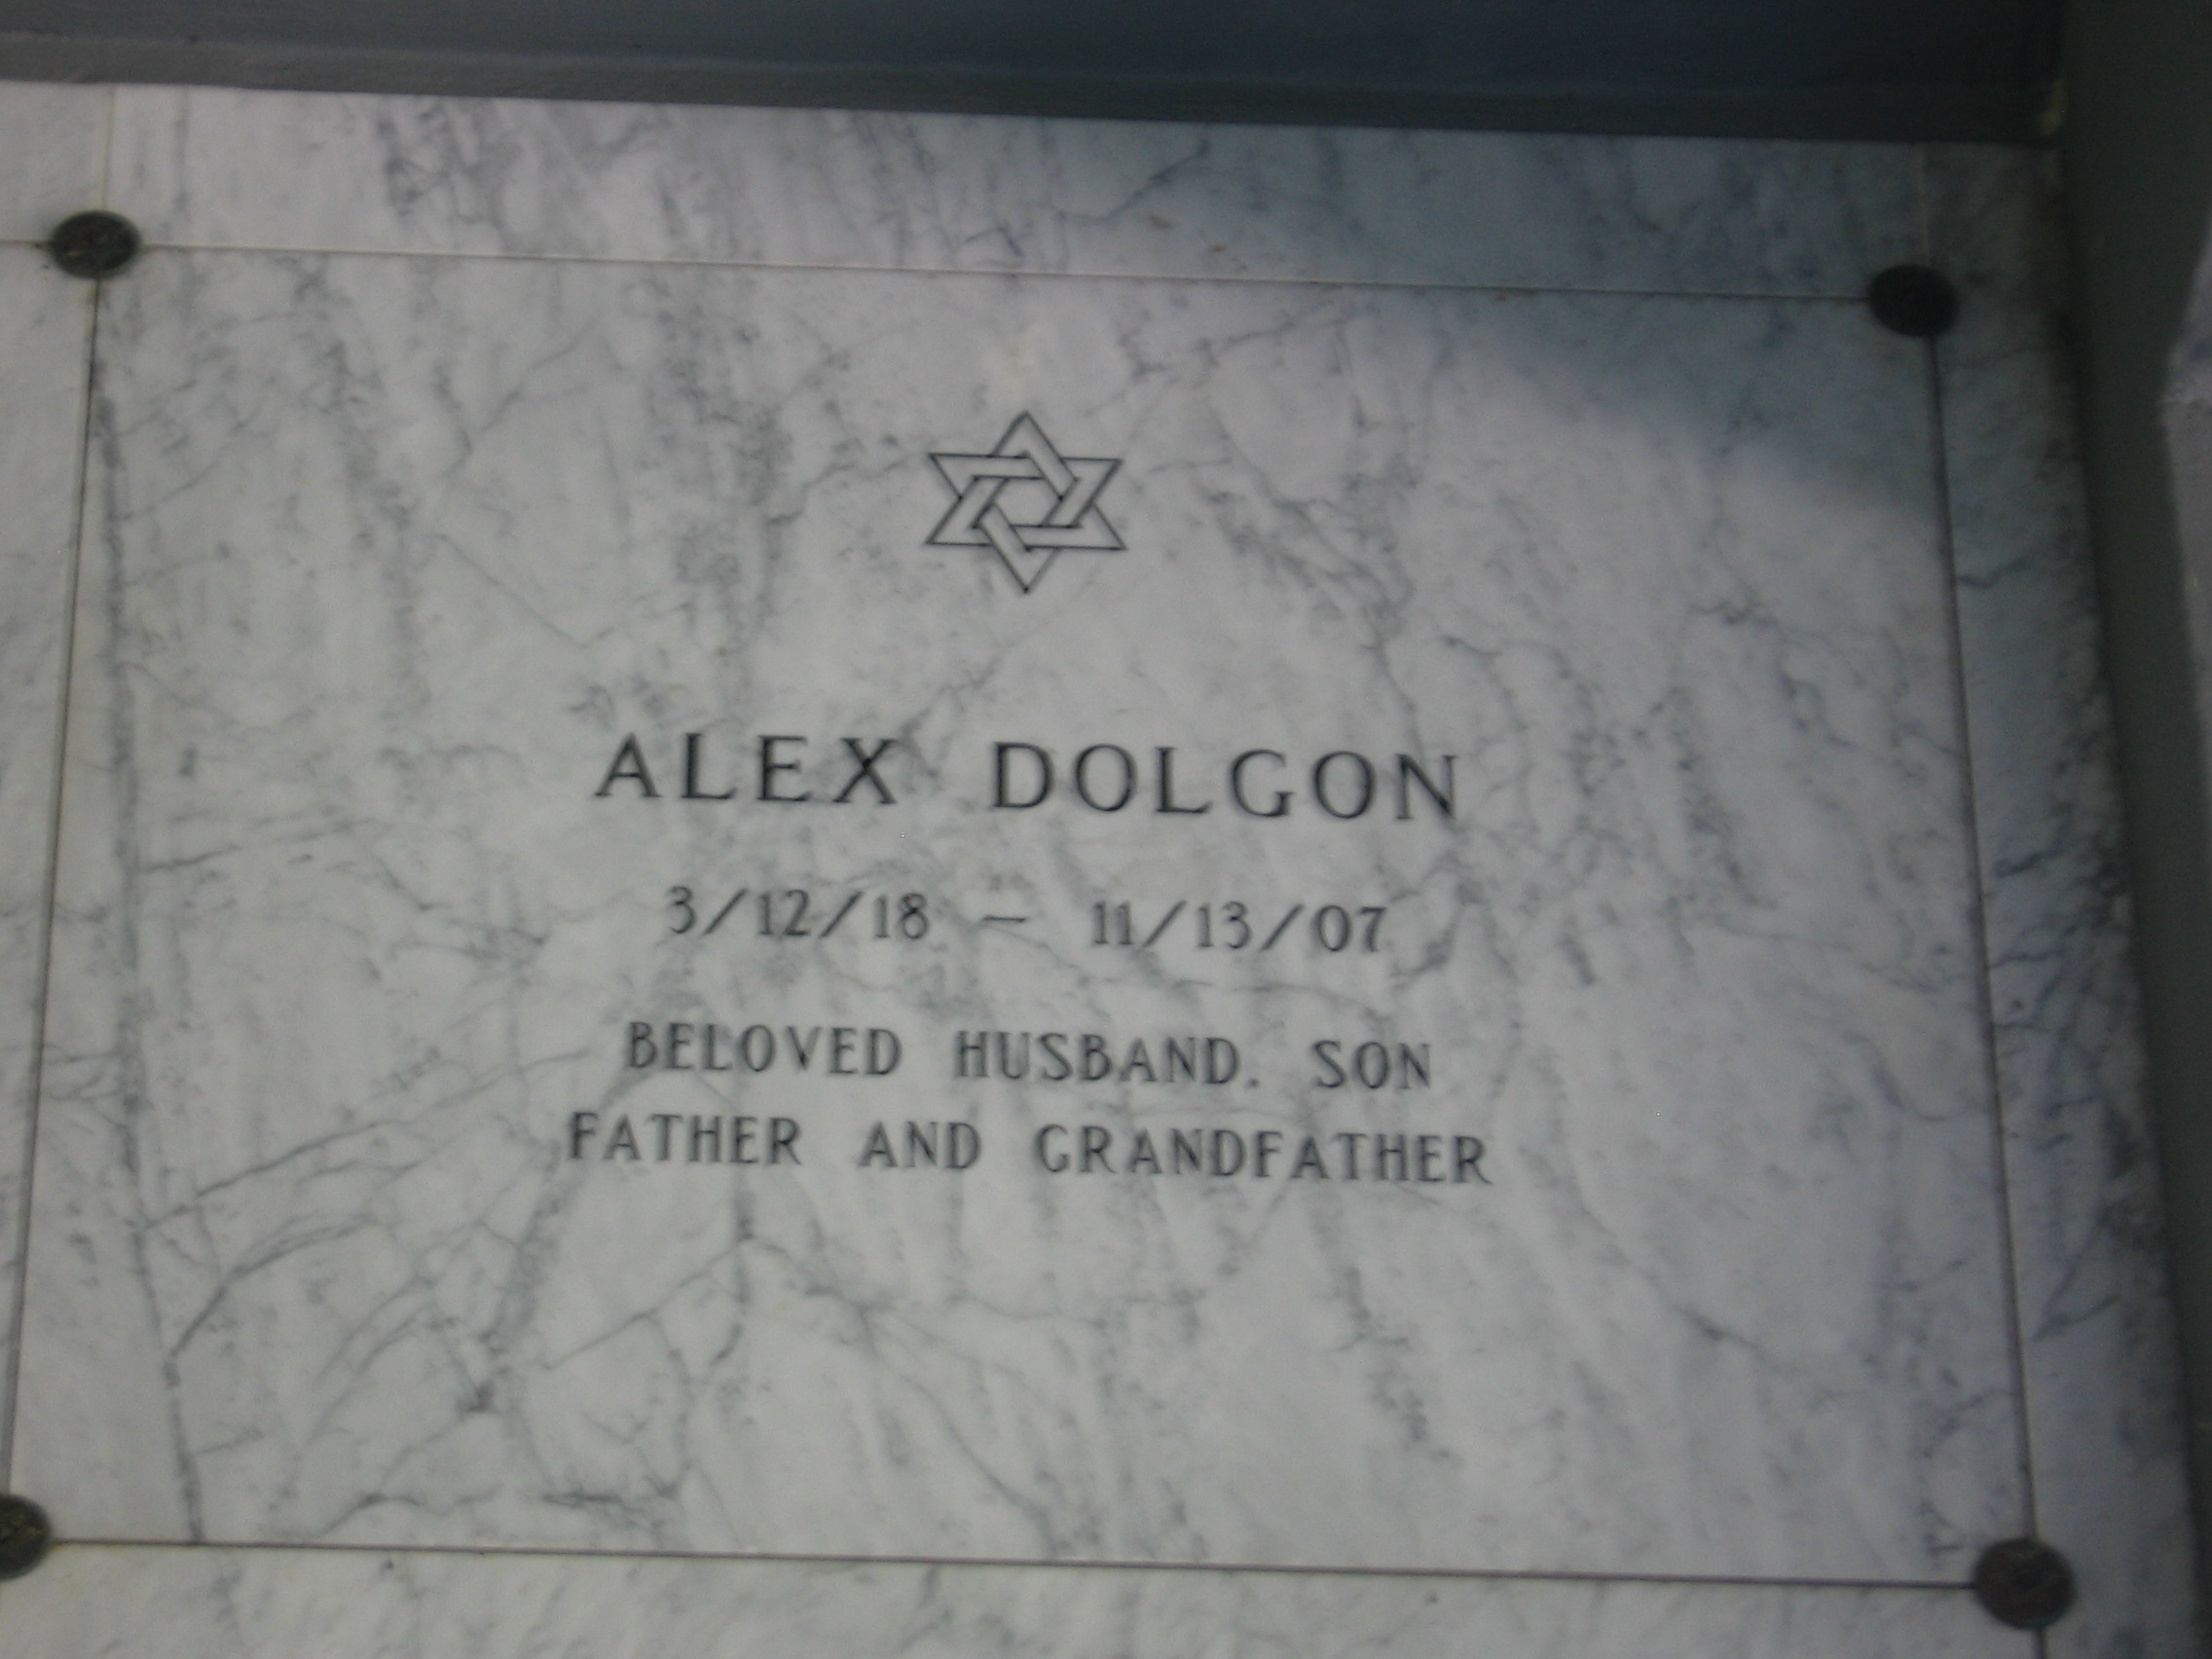 Alex Dolgon